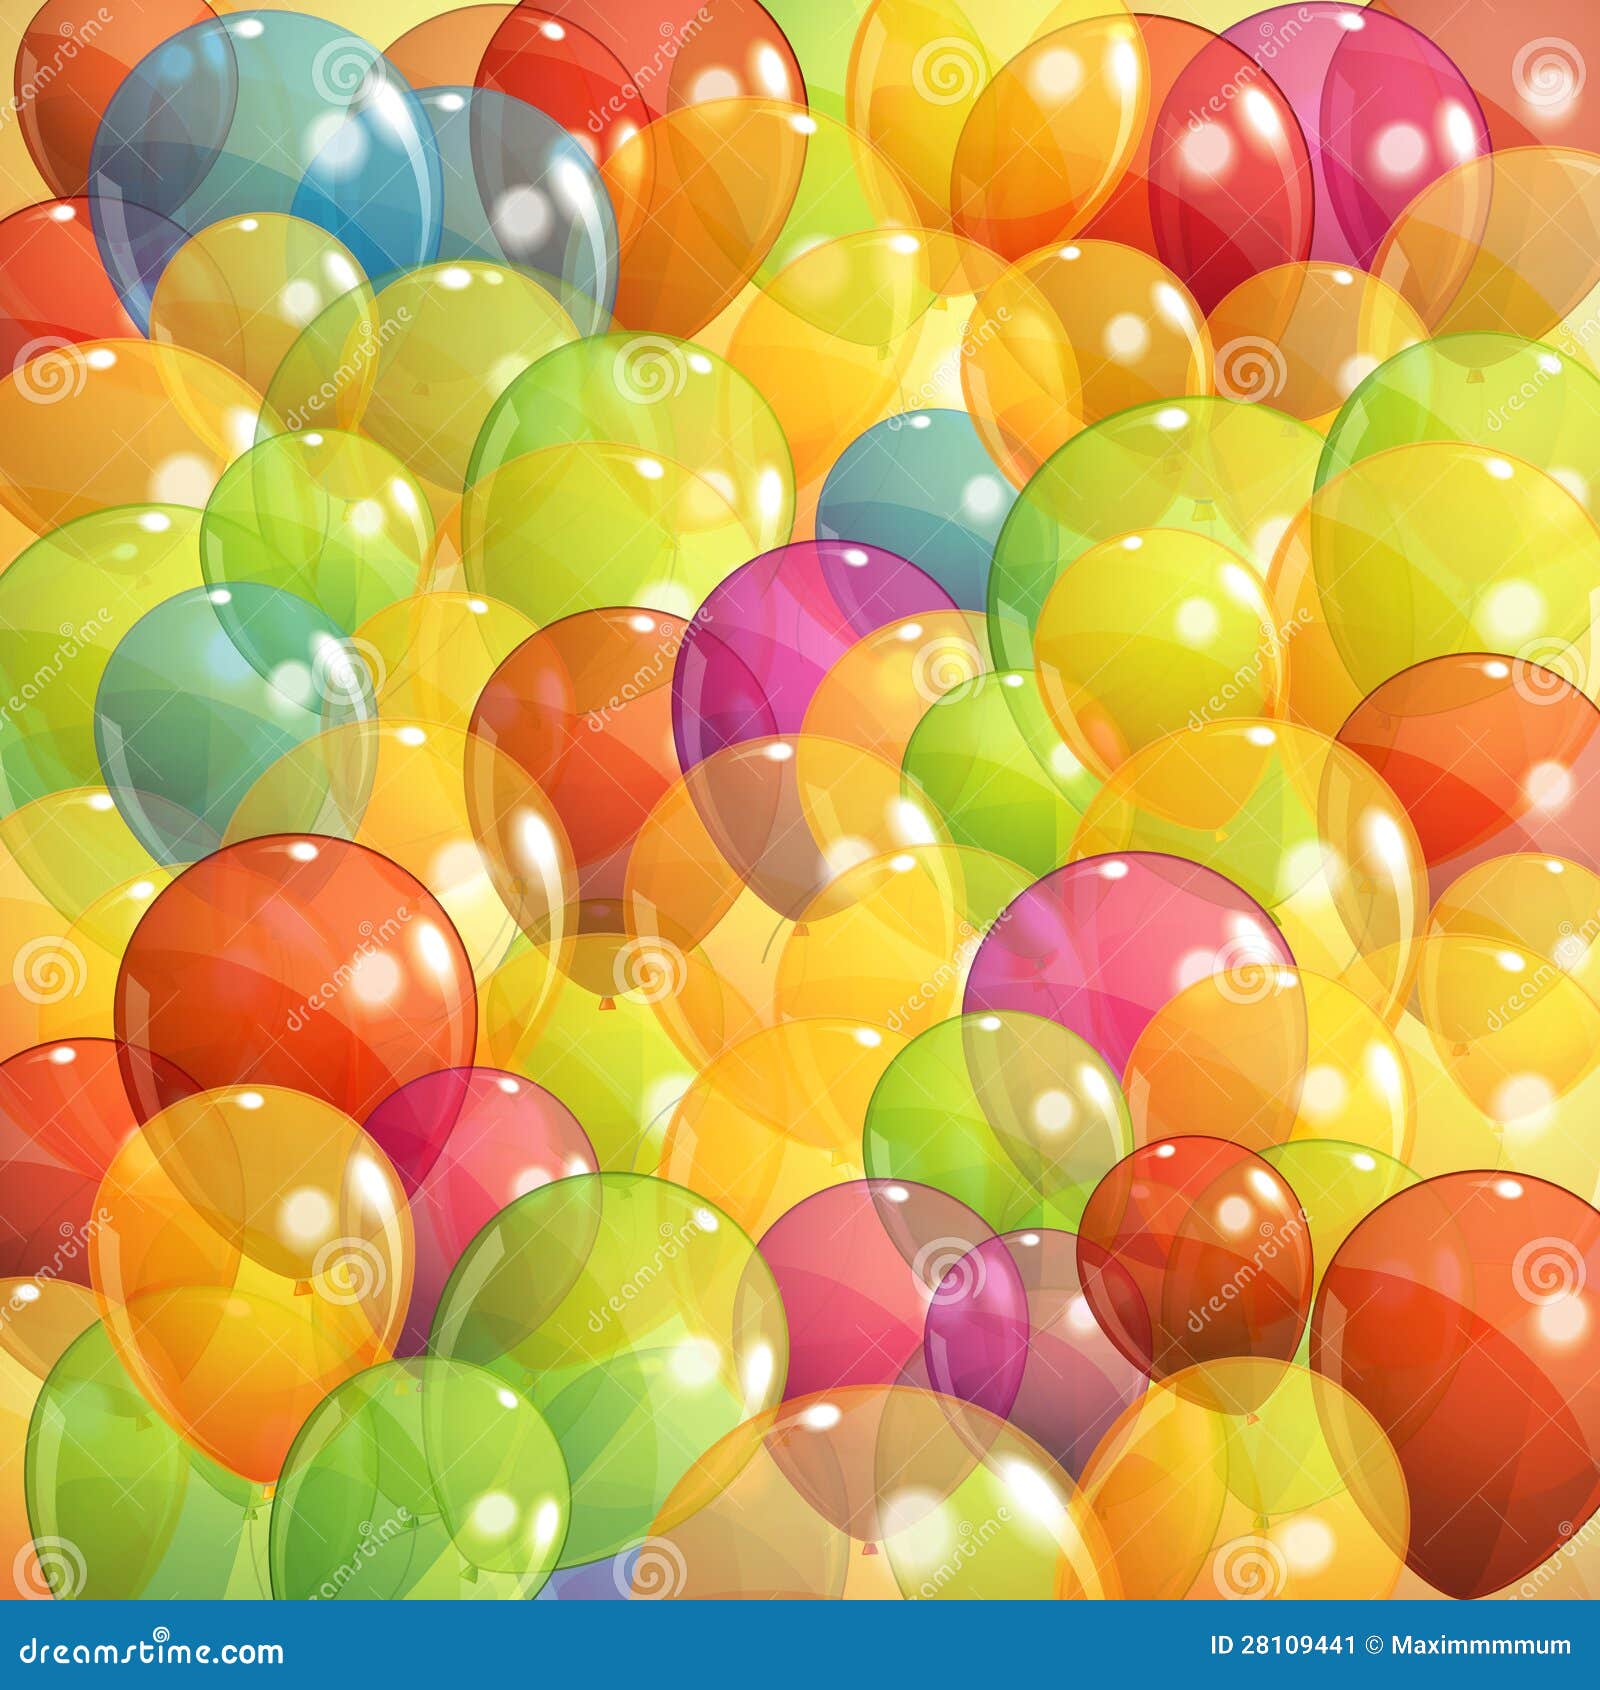 Featured image of post Fundo De Baloes Coloridos / Colorir.com desenhos festas são valentim balões.